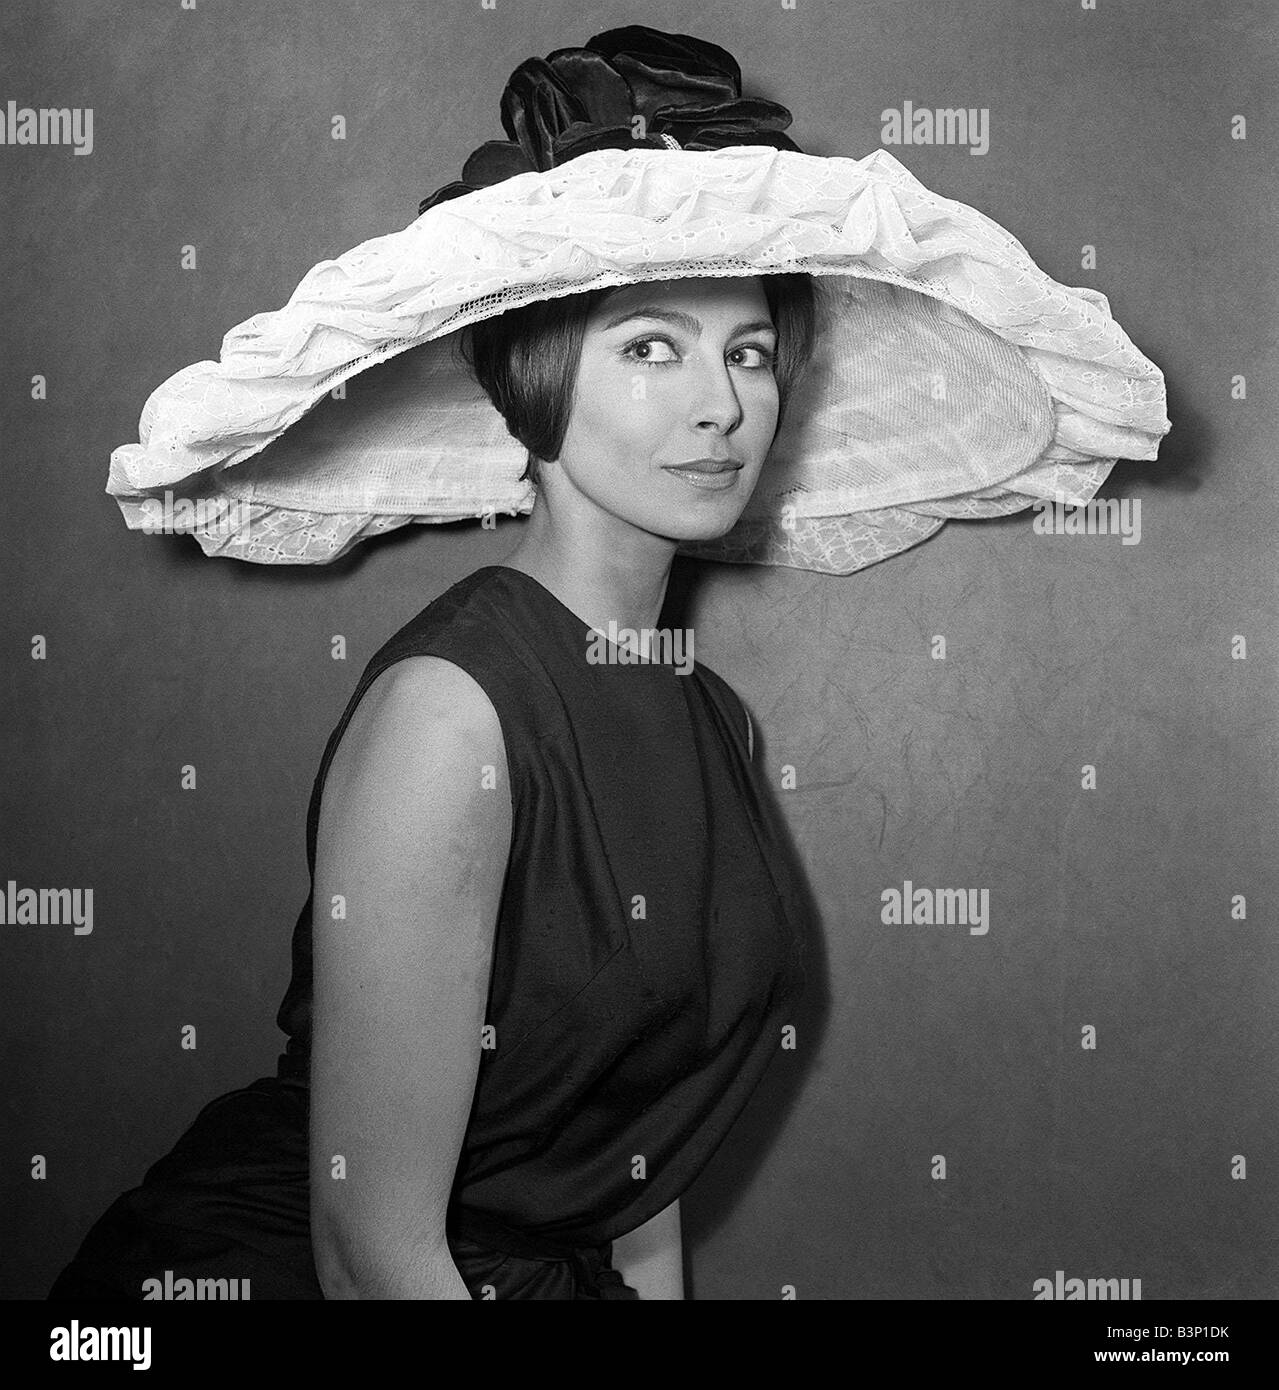 Abbigliamento moda cappelli gennaio 1964 un enorme broderie Anglais colmato hat con corona petalled da Simone Mirman Foto Stock